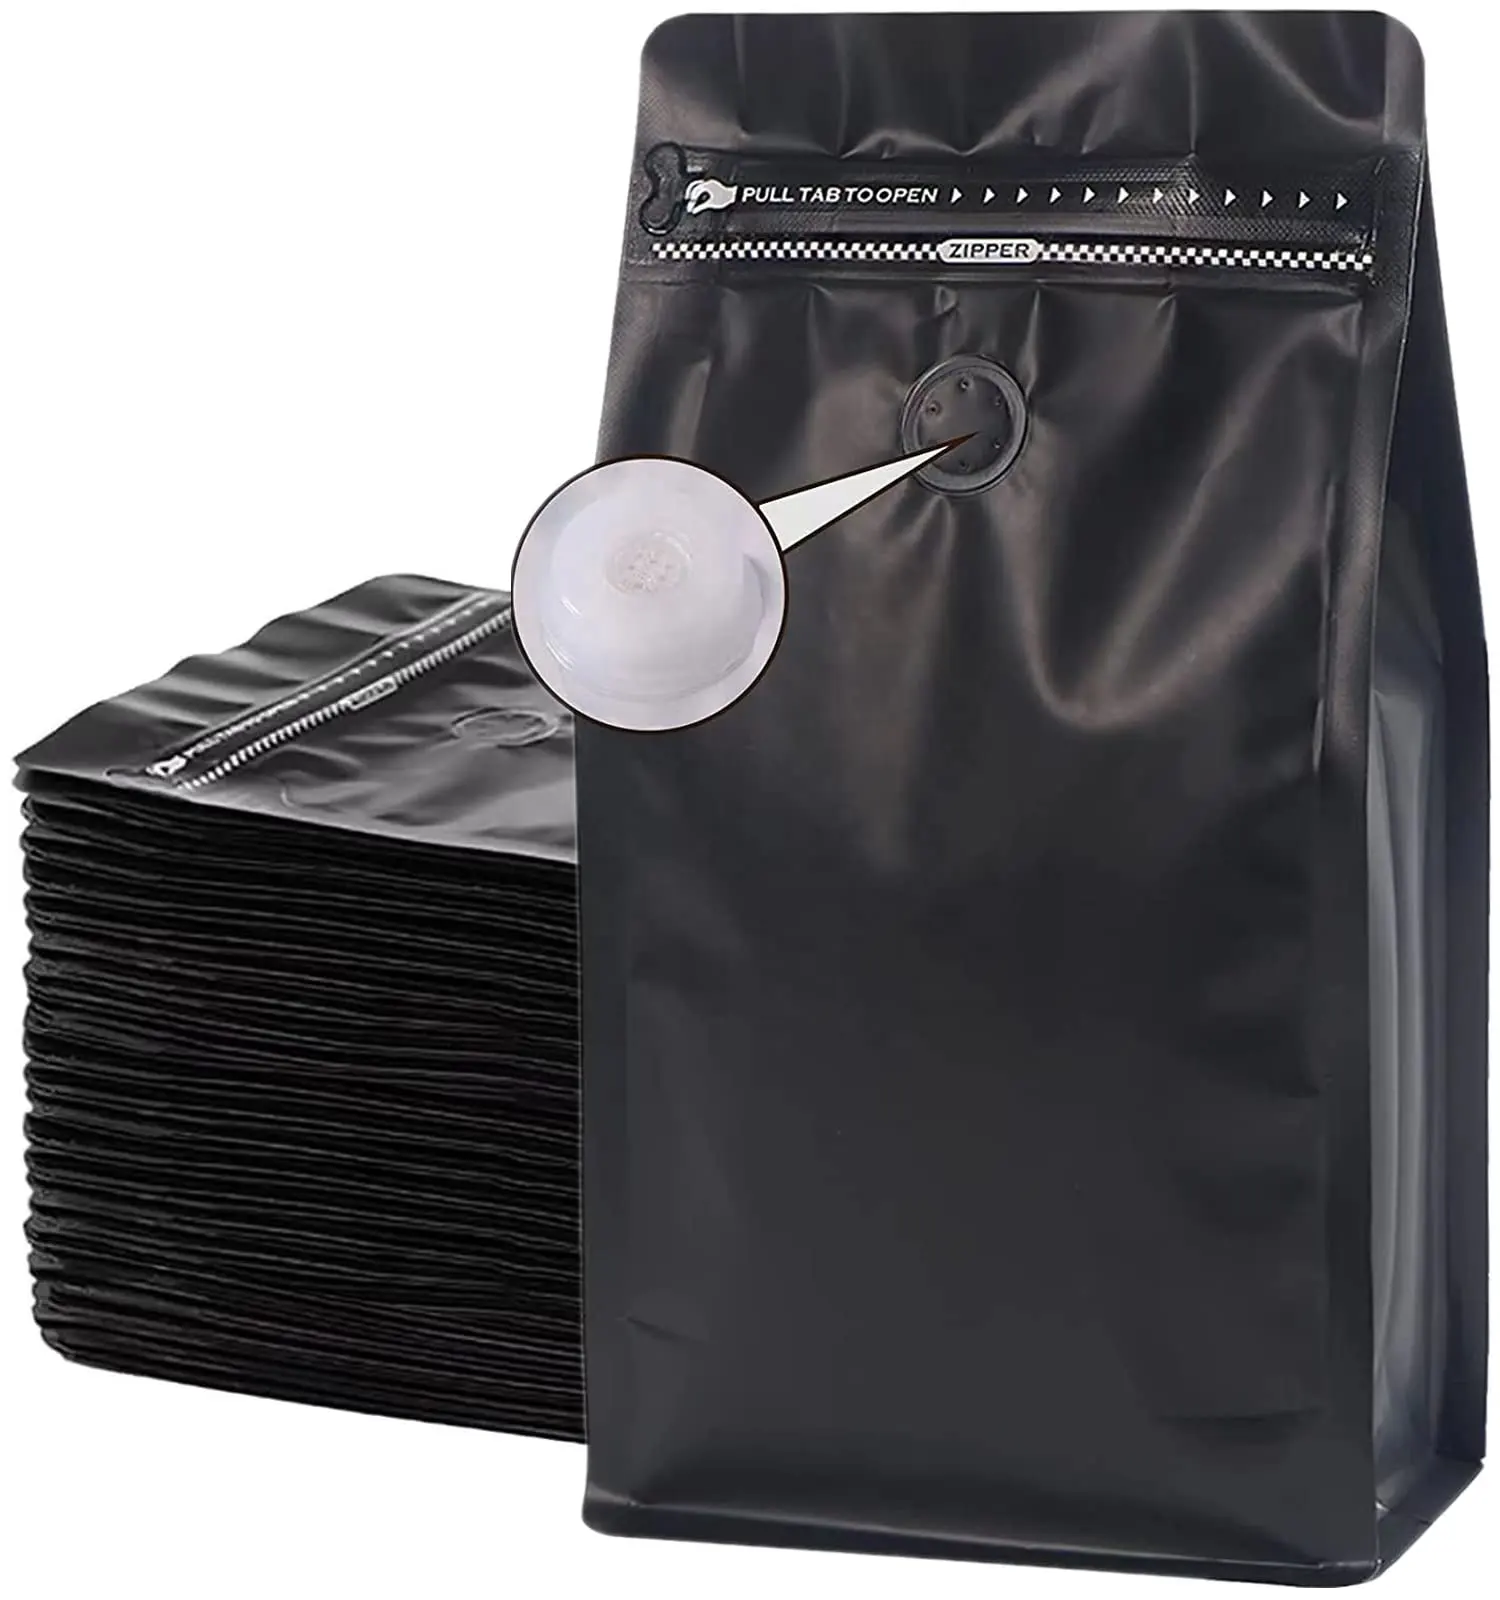 カスタム100g 150g 250g 500g 1kgPla生分解性サイドガセットフラットボトムビーンズ包装バルブ付き堆肥化可能コーヒーバッグ